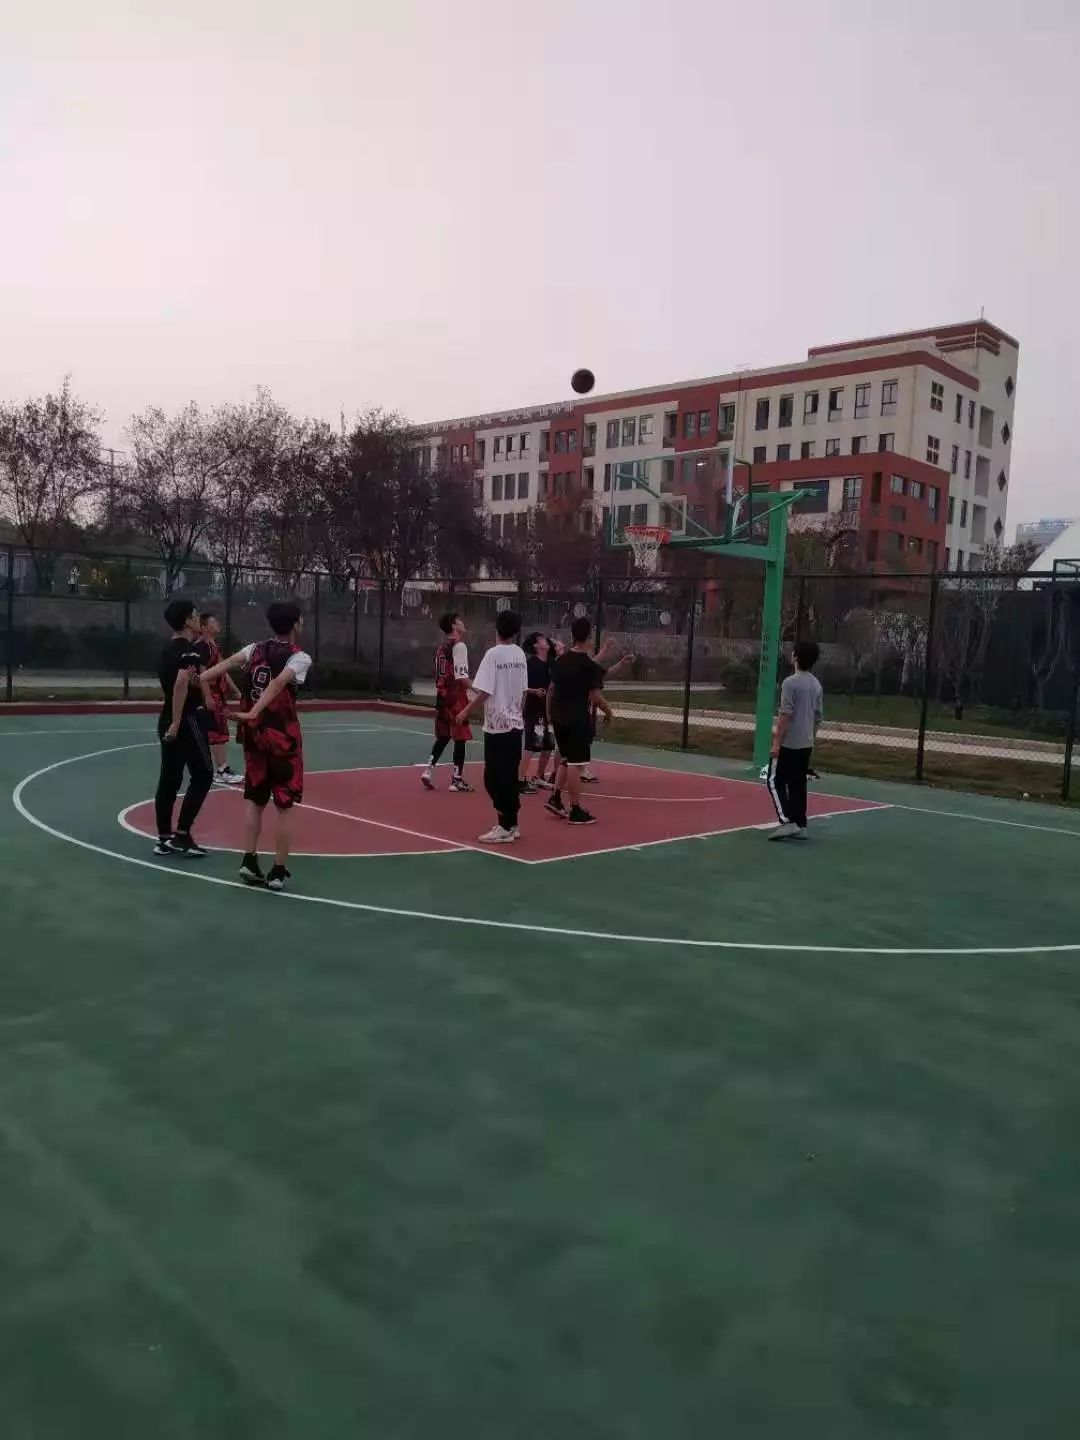 合肥世外高中部举办迎新篮球赛